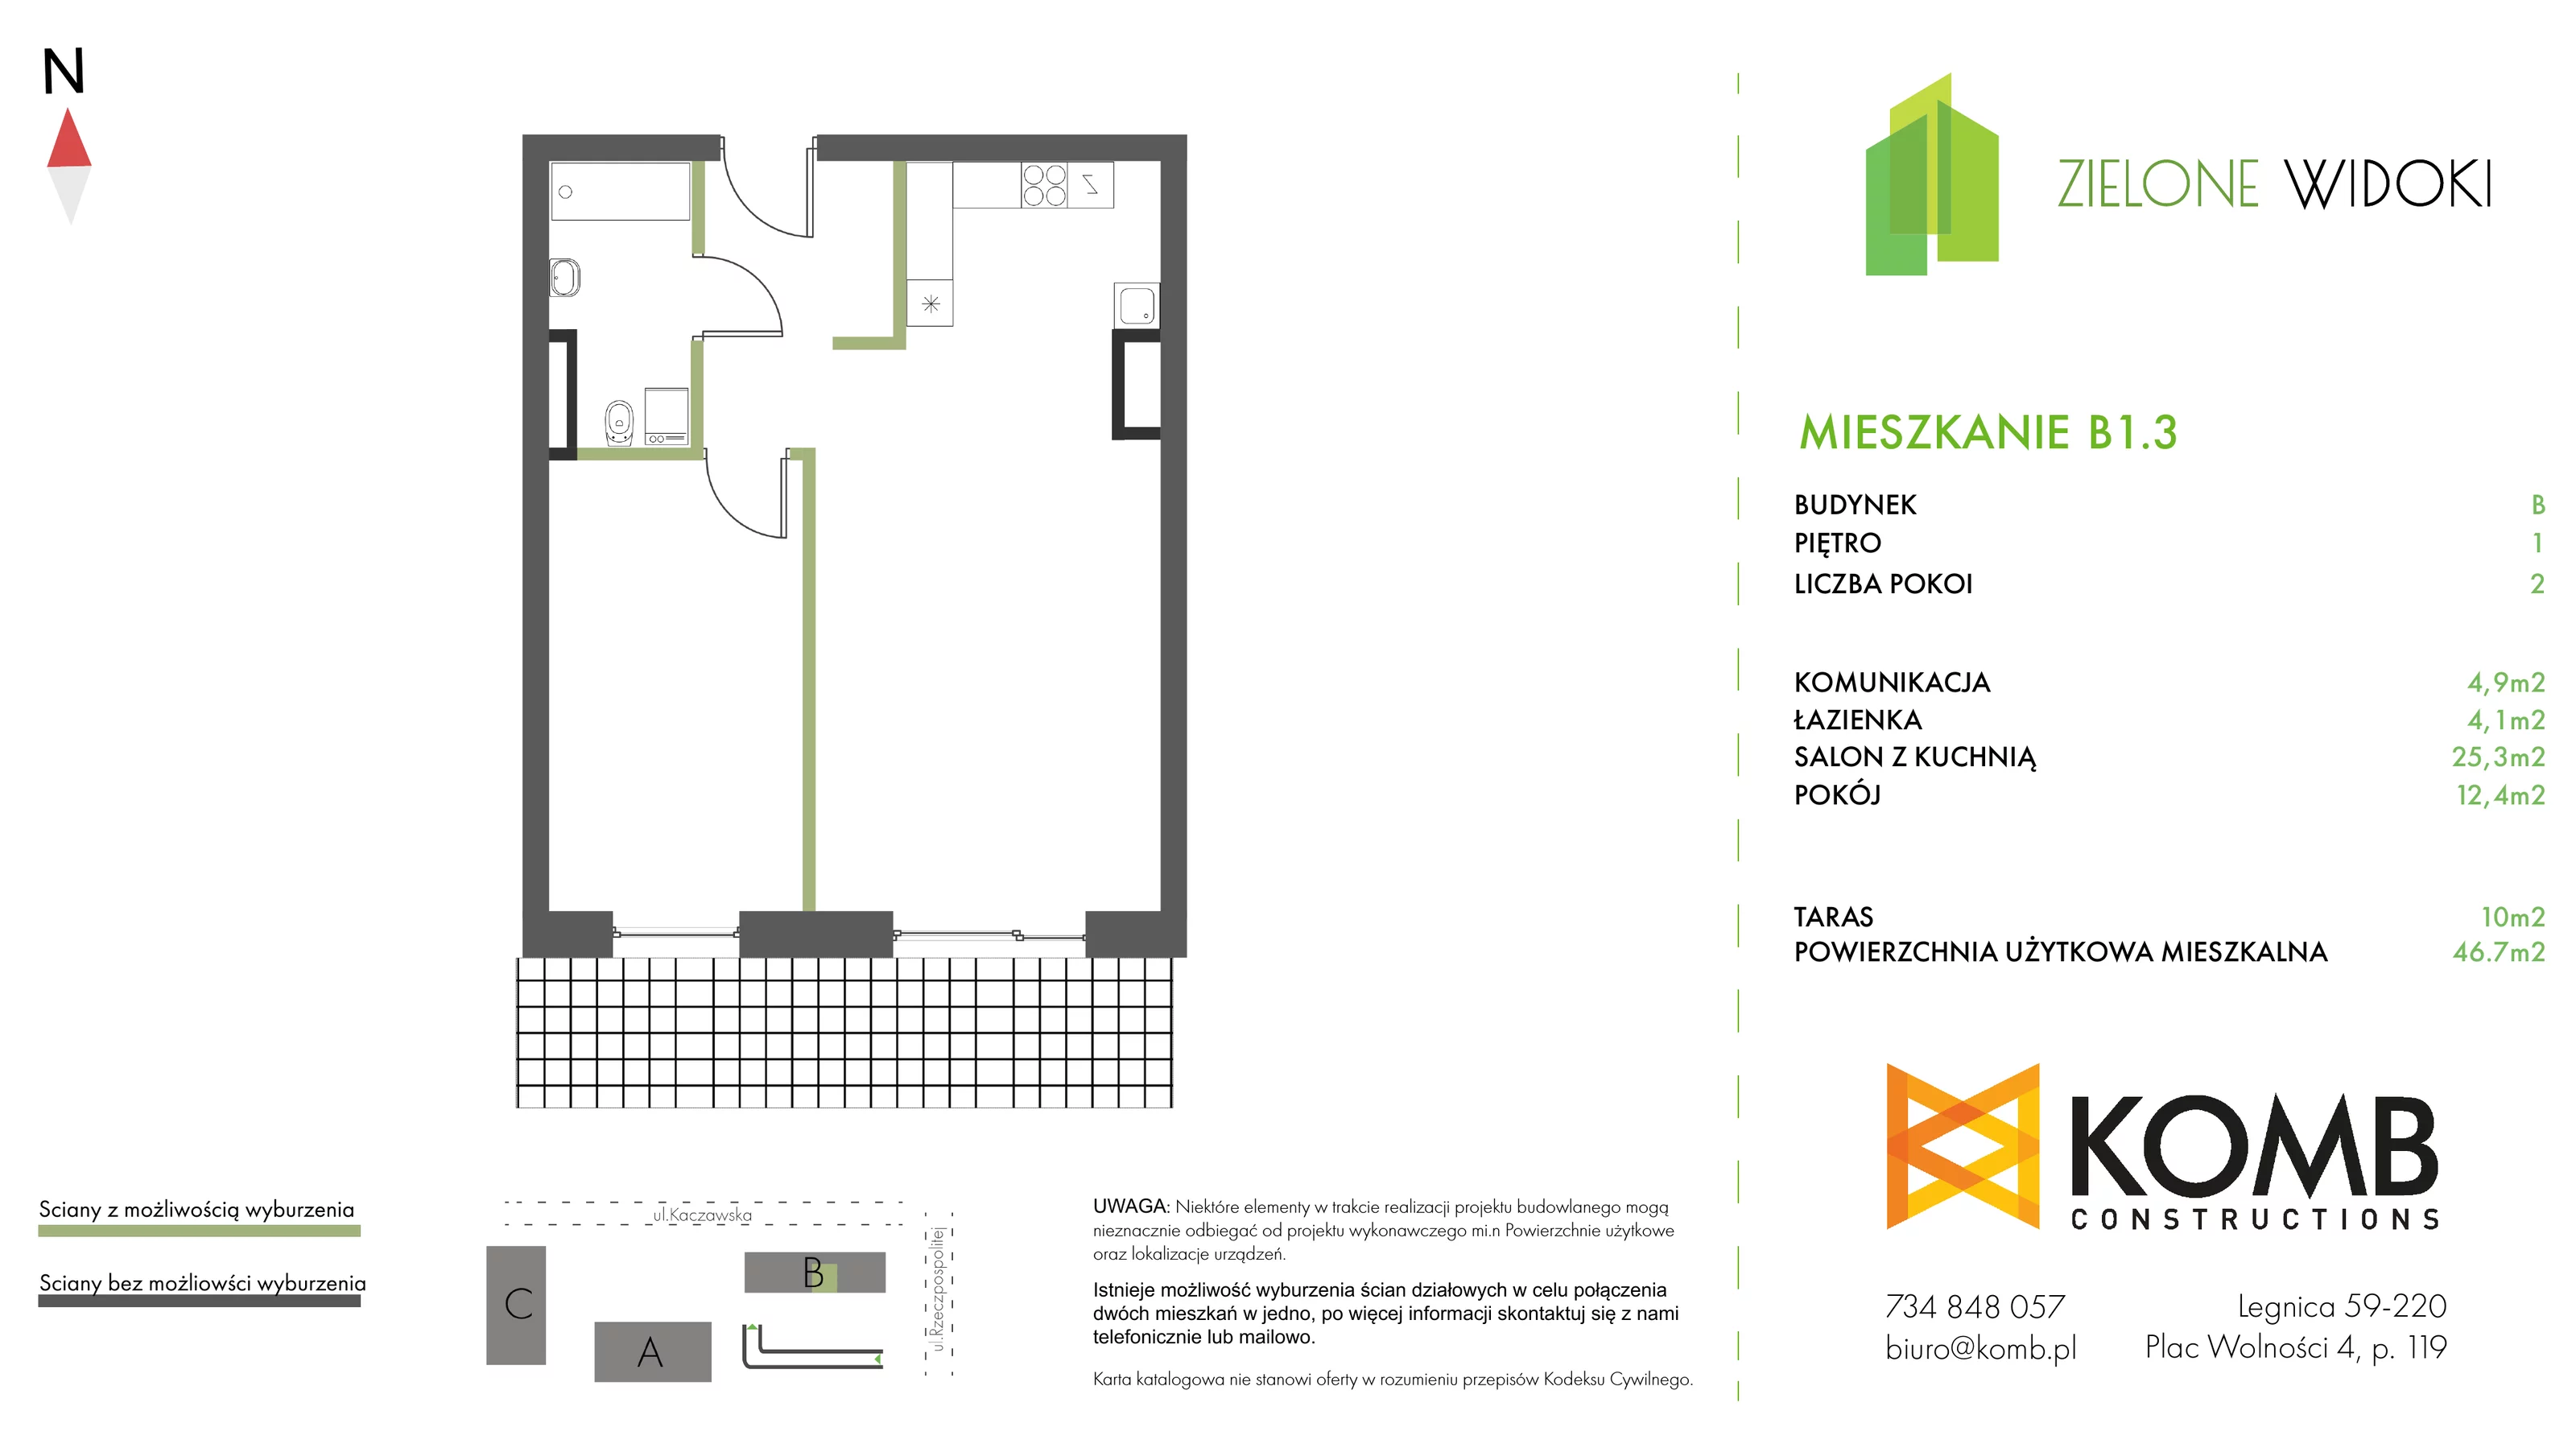 Mieszkanie 46,70 m², piętro 1, oferta nr B1.3, Zielone Widoki, Legnica, Bielany, al. Rzeczypospolitej 23